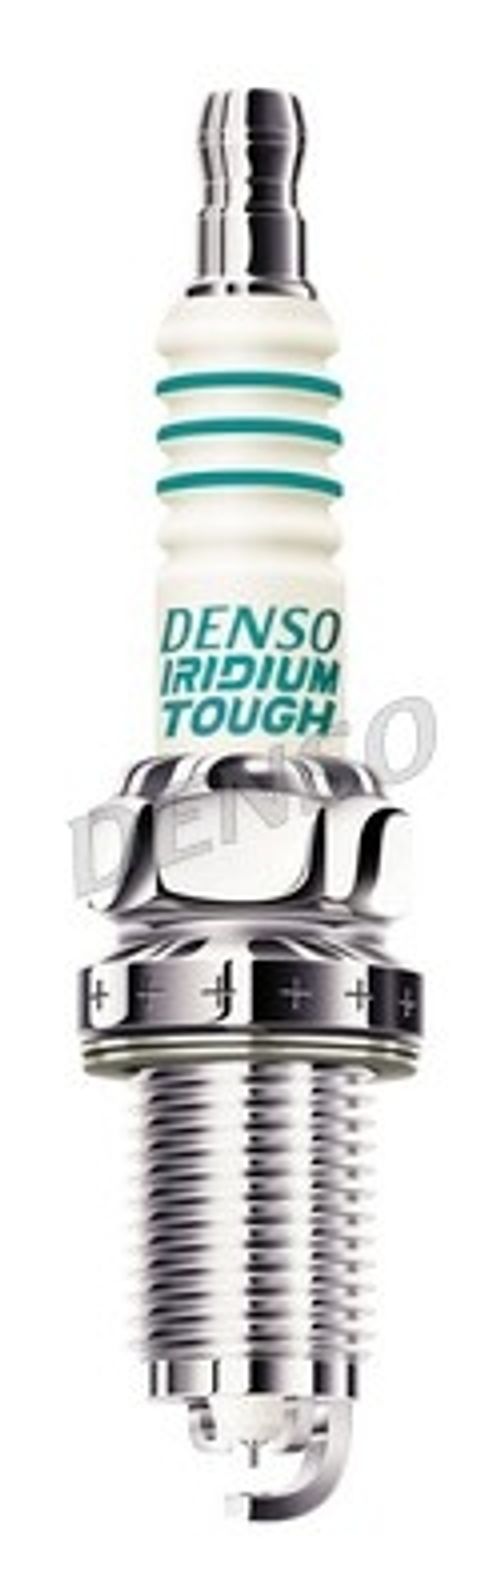 Produktbild für Zündkerze Iridium Tough